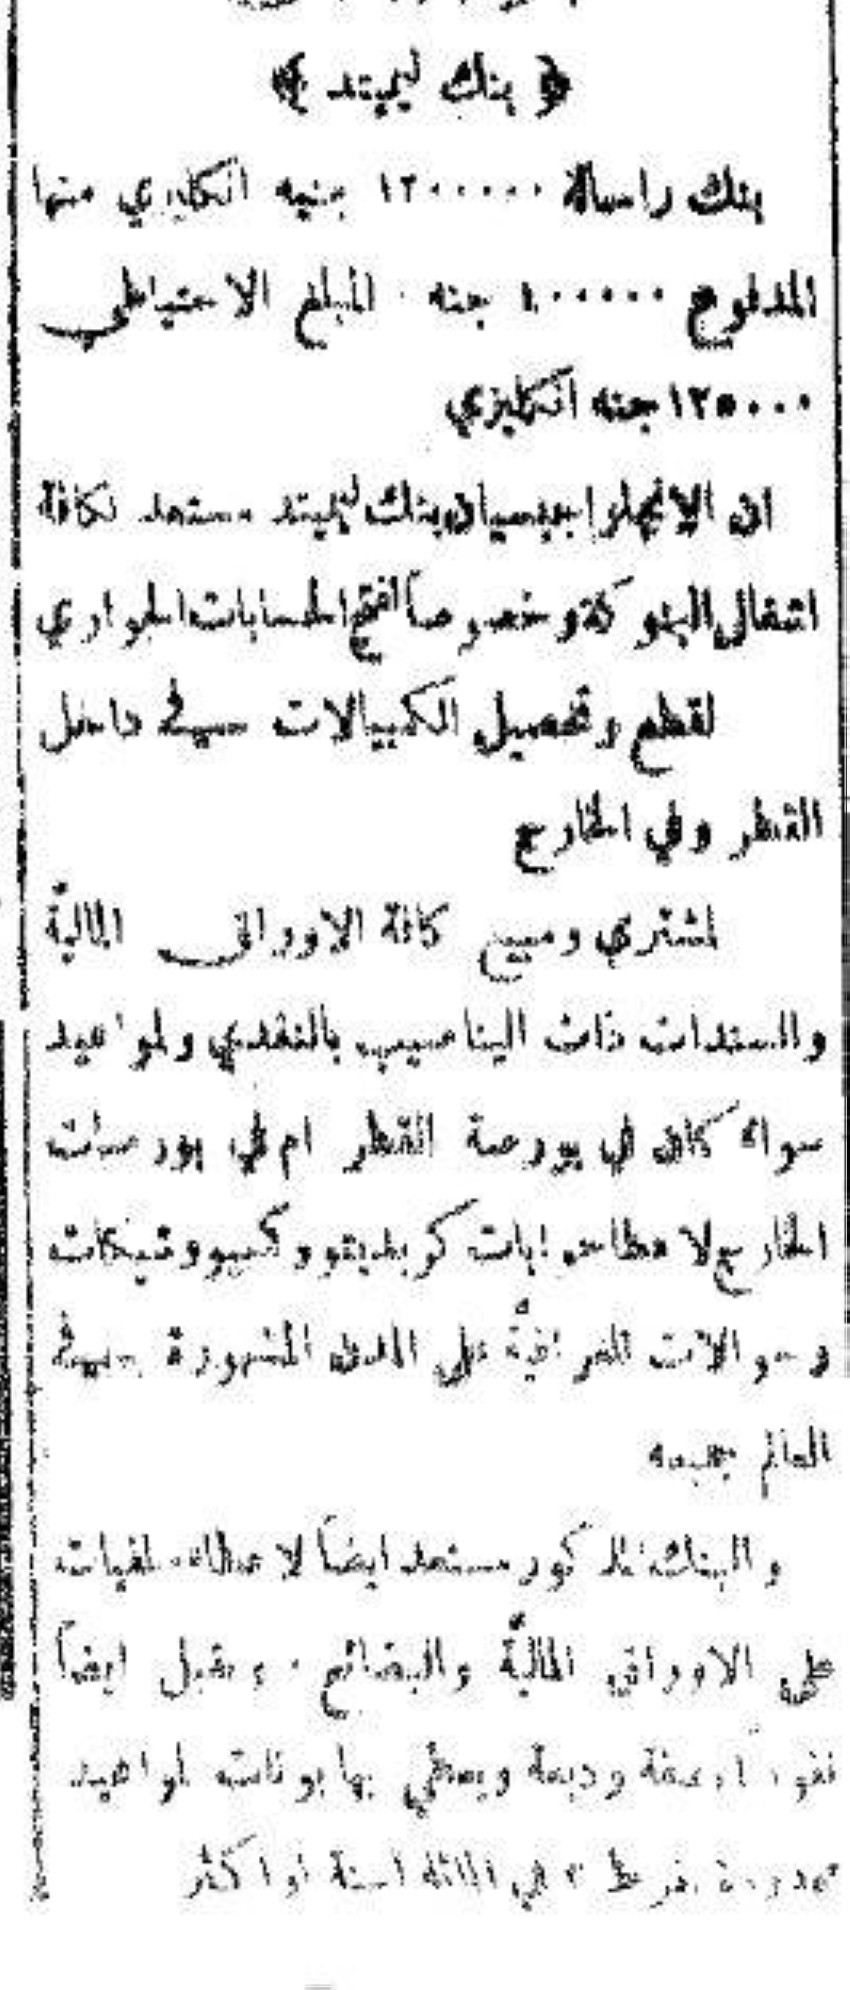 إعلان بجريدة الأهرام المصرية عن «بنك ليمتيد» في 17 أبريل 1899. (خاص الرؤية)